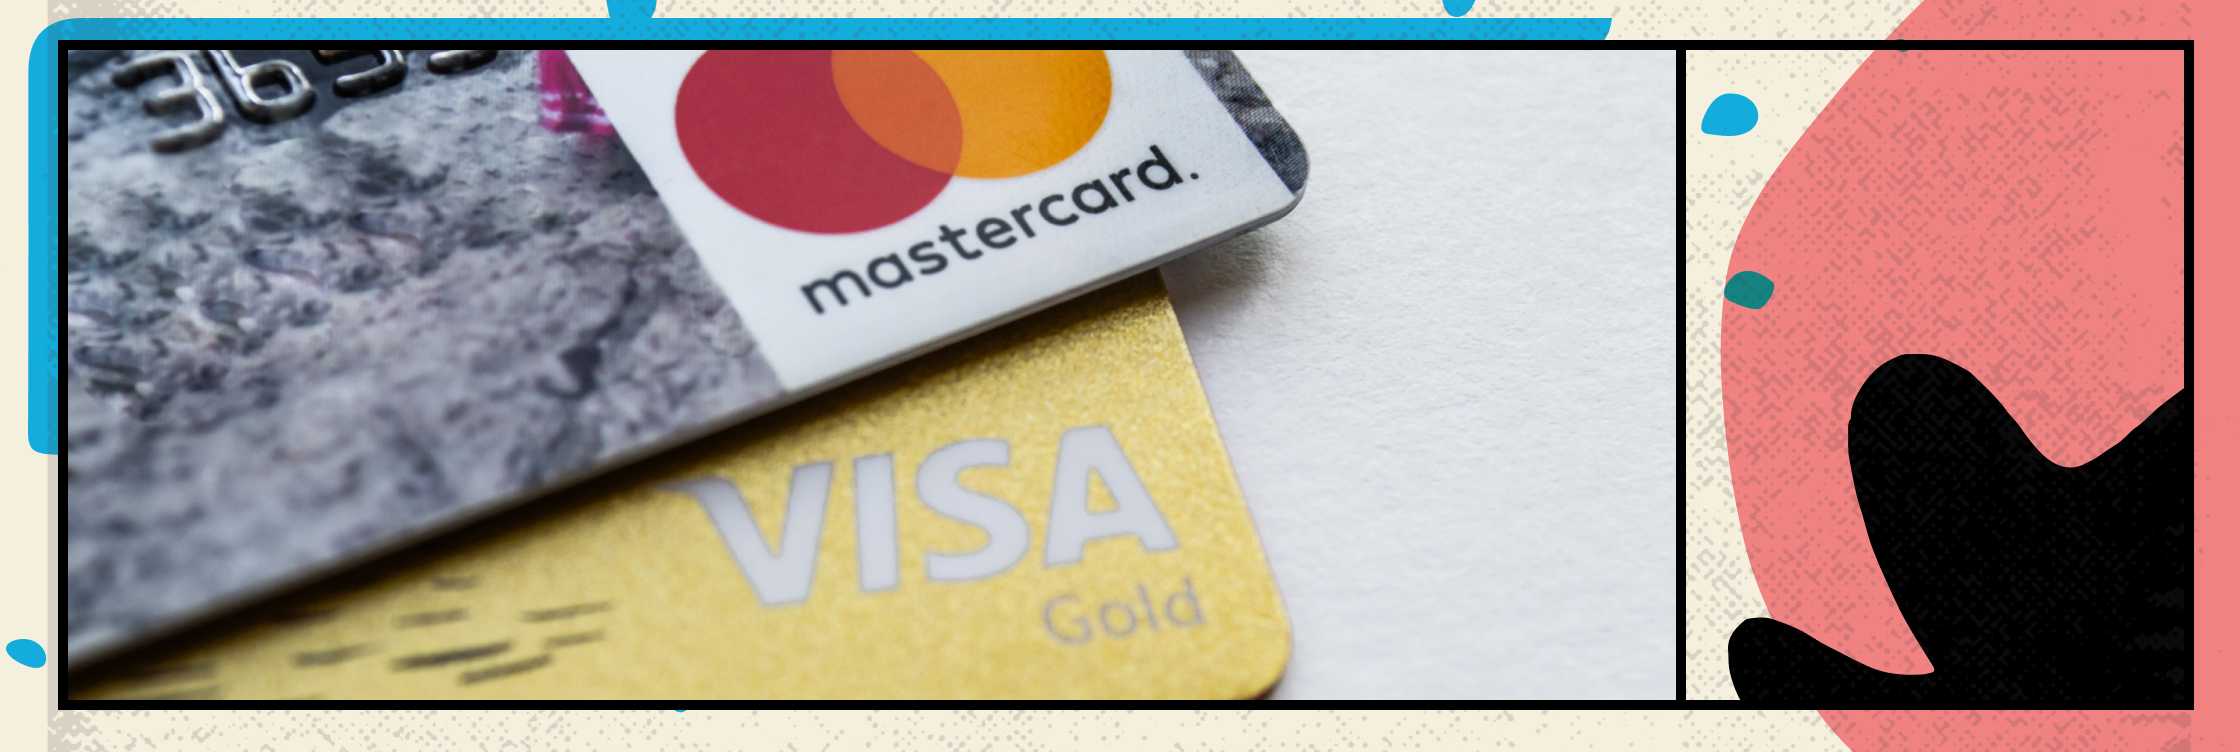 По объему транзакций Bitcoin уступает только сетям Visa и Mastercard